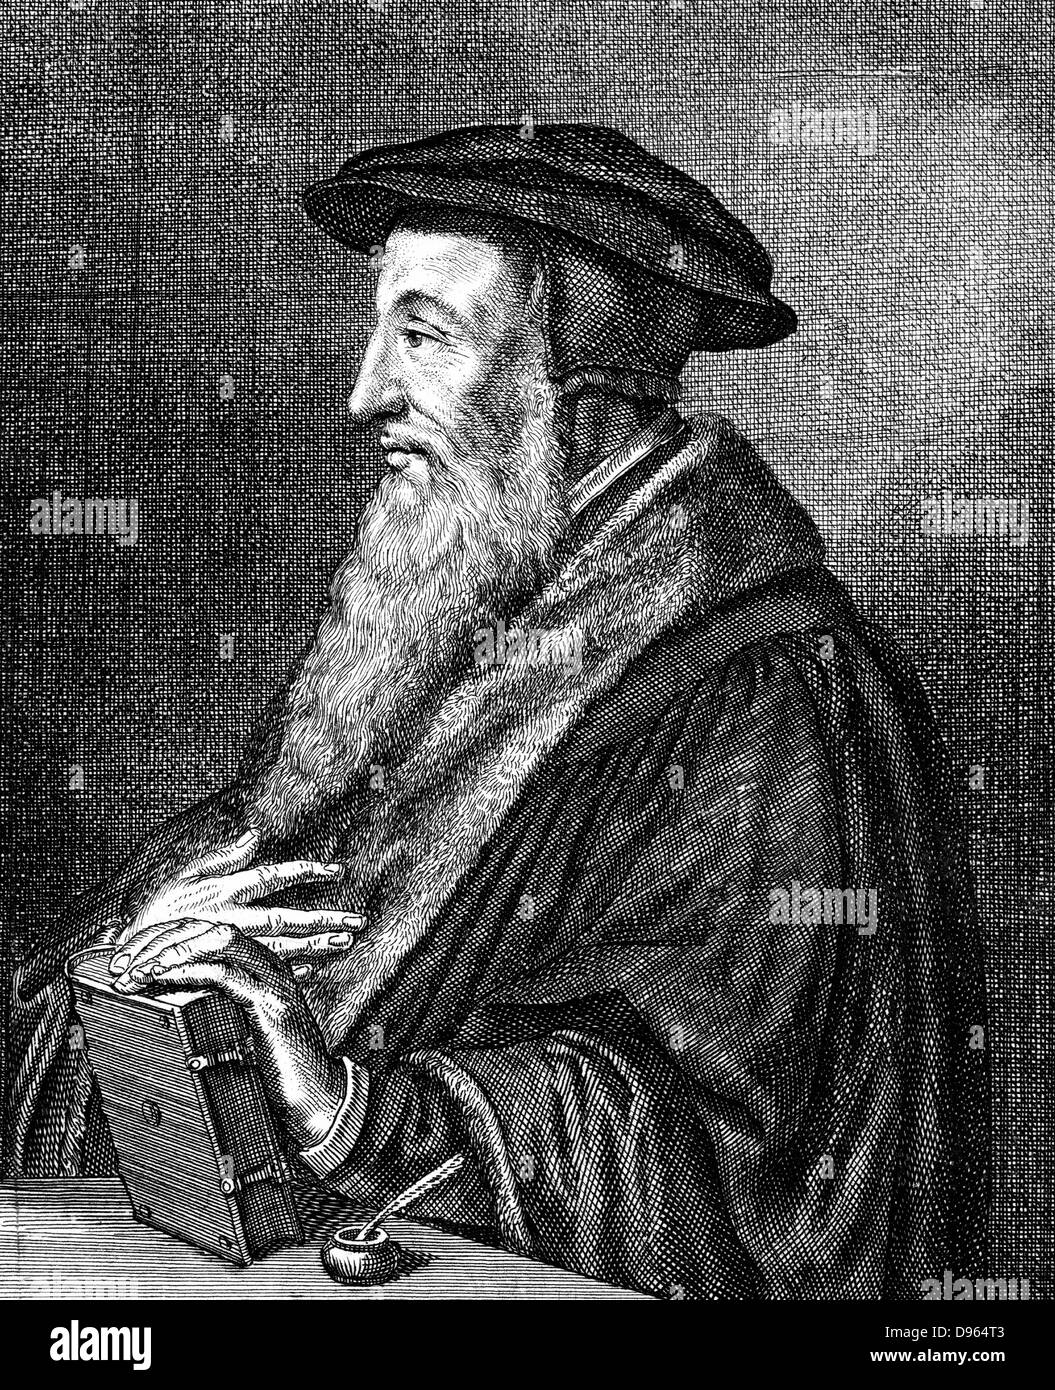 Jean Calvin (1509-1564), teologo francese. Riformatore protestante. Si stabilì a Ginevra e fu protagonista della Riforma Protestante. Ha dato il suo nome alla forma rigorosa del protestantesimo, il calvinismo. Incisione su rame di Konrad Meyer (1616-1689). Foto Stock